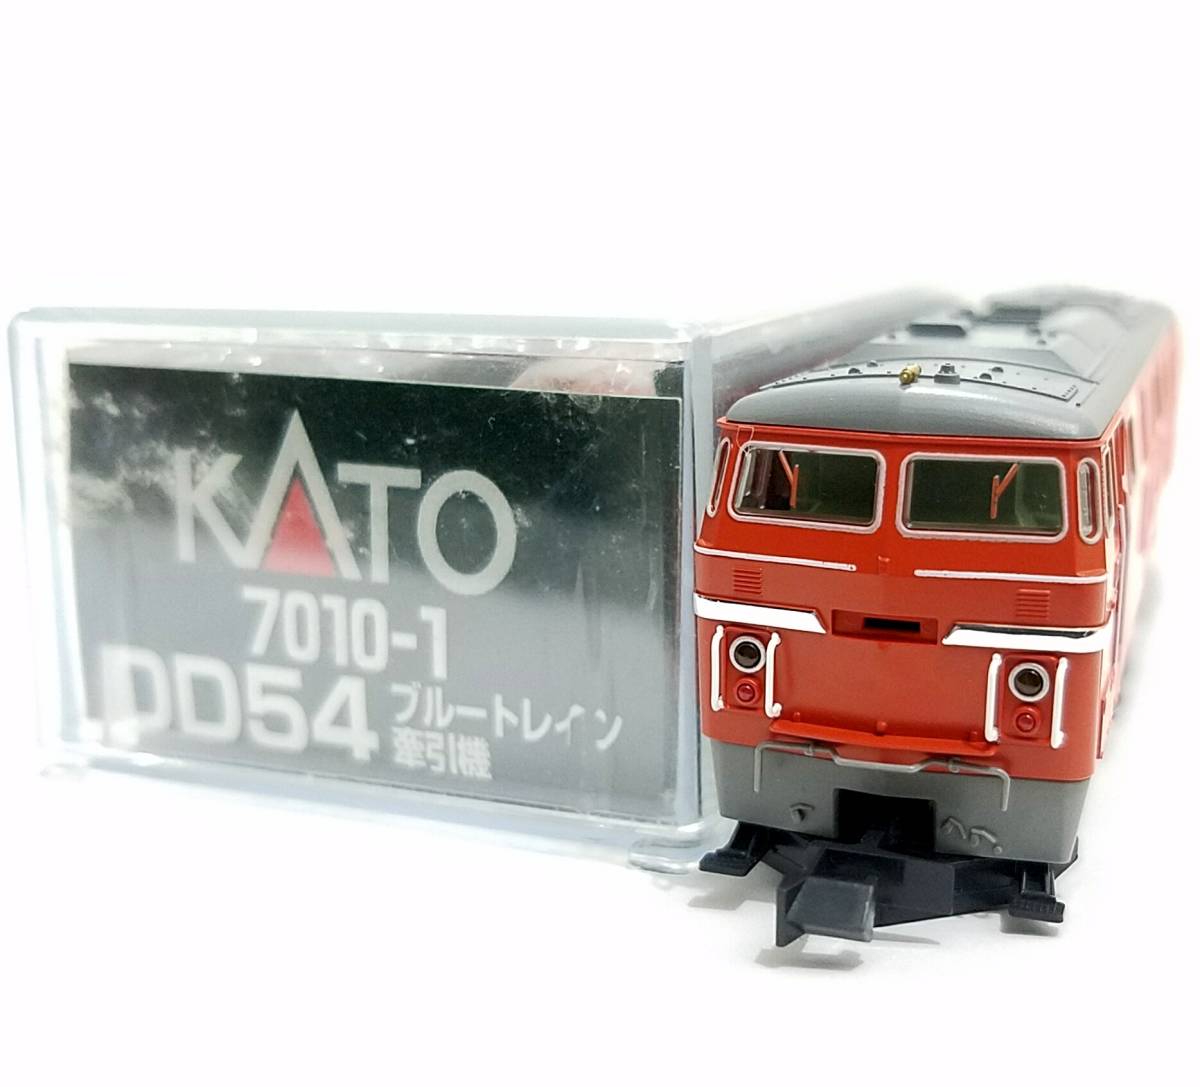 新品同様品 KATO 7010-1 DD54 ブルートレイン牽引機(M) 出雲 ディーゼル機関車 鉄道模型 Nゲージ 動力車(M車) カトー N-GAUGE_画像7